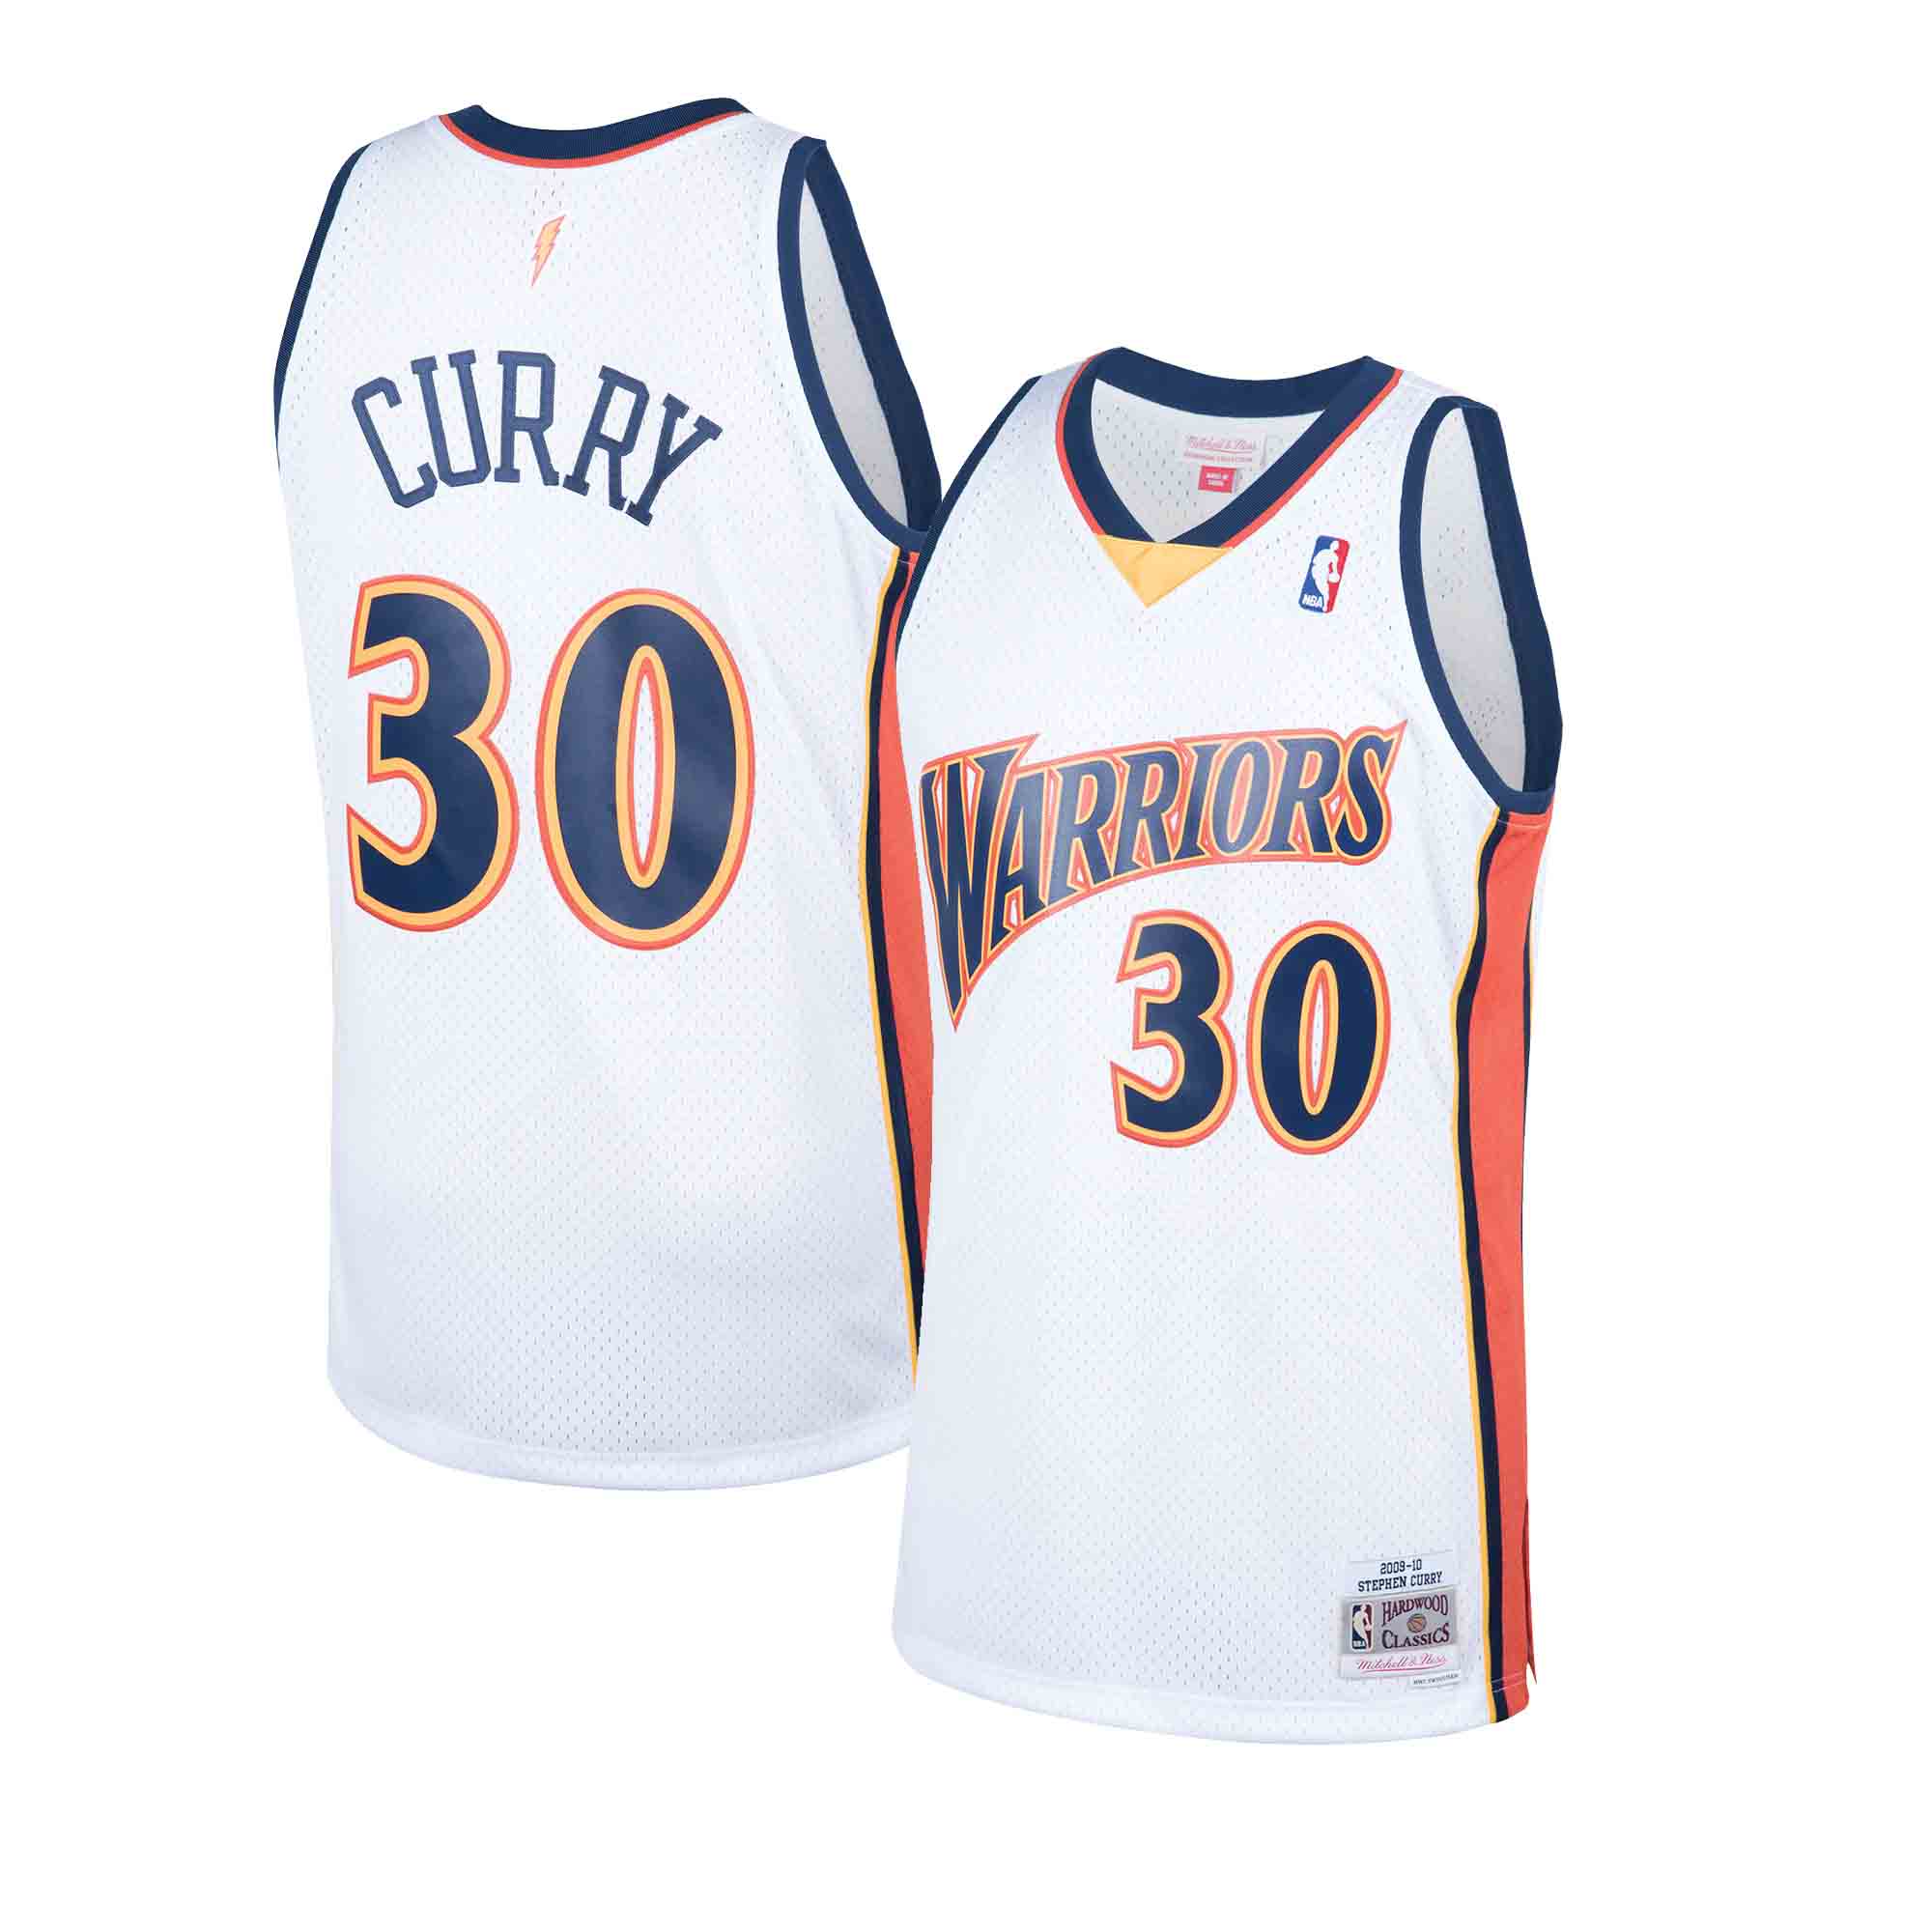 NEW Adidas Steph Curry Golden State Warriors #30 Swingman NBA Jersey MENS  XXL+2